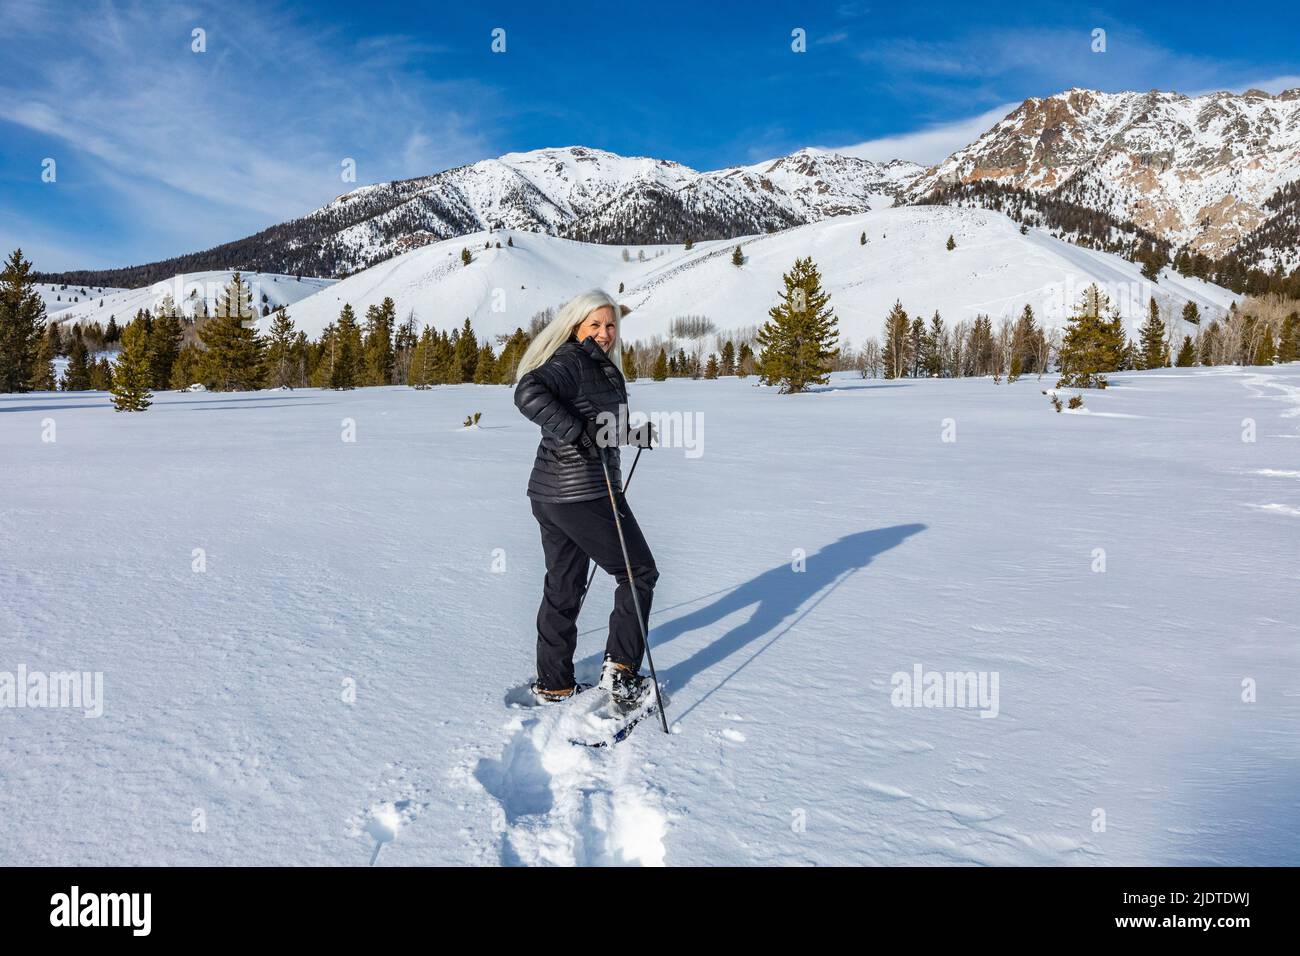 États-Unis, Idaho, Ketchum, femme blonde senior raquettes dans un paysage enneigé Banque D'Images